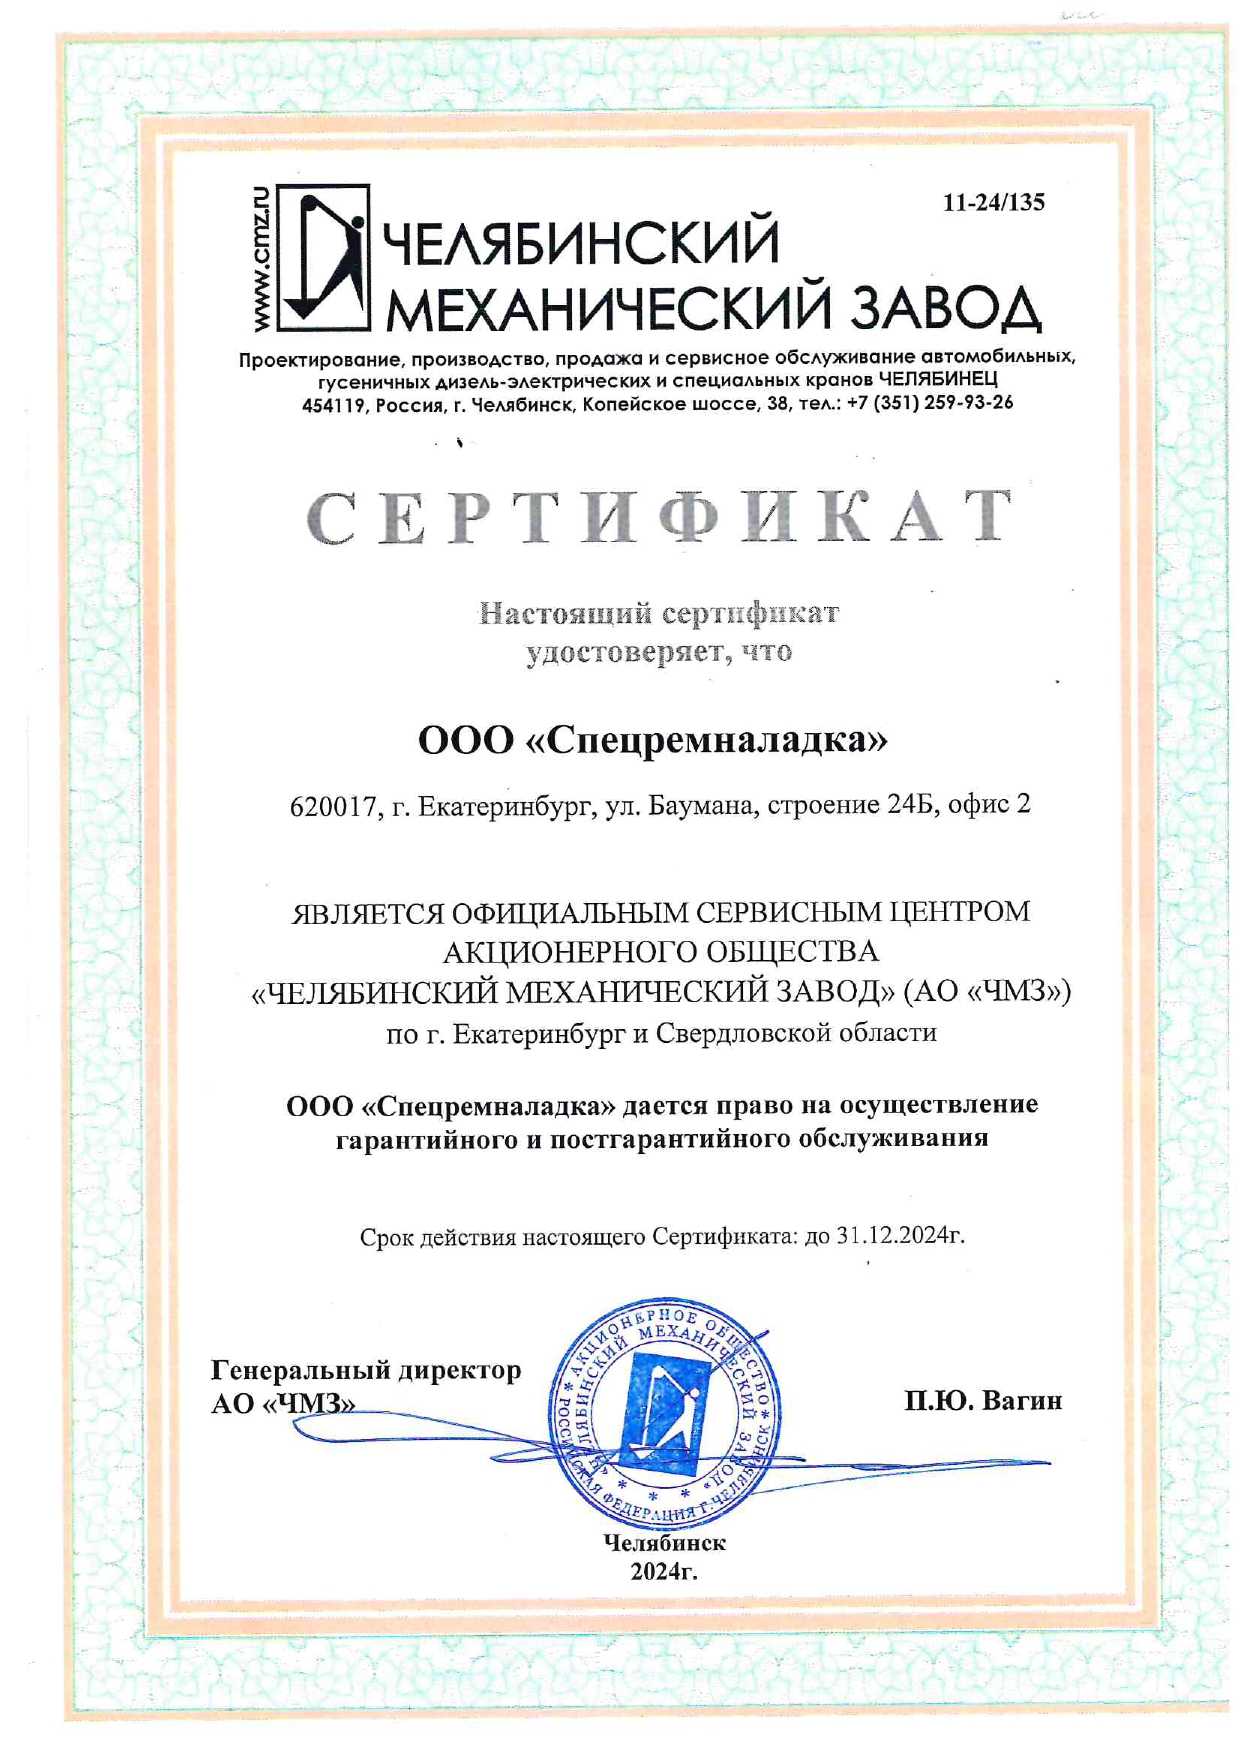 Сертификат "Челябинский Механический Завод"